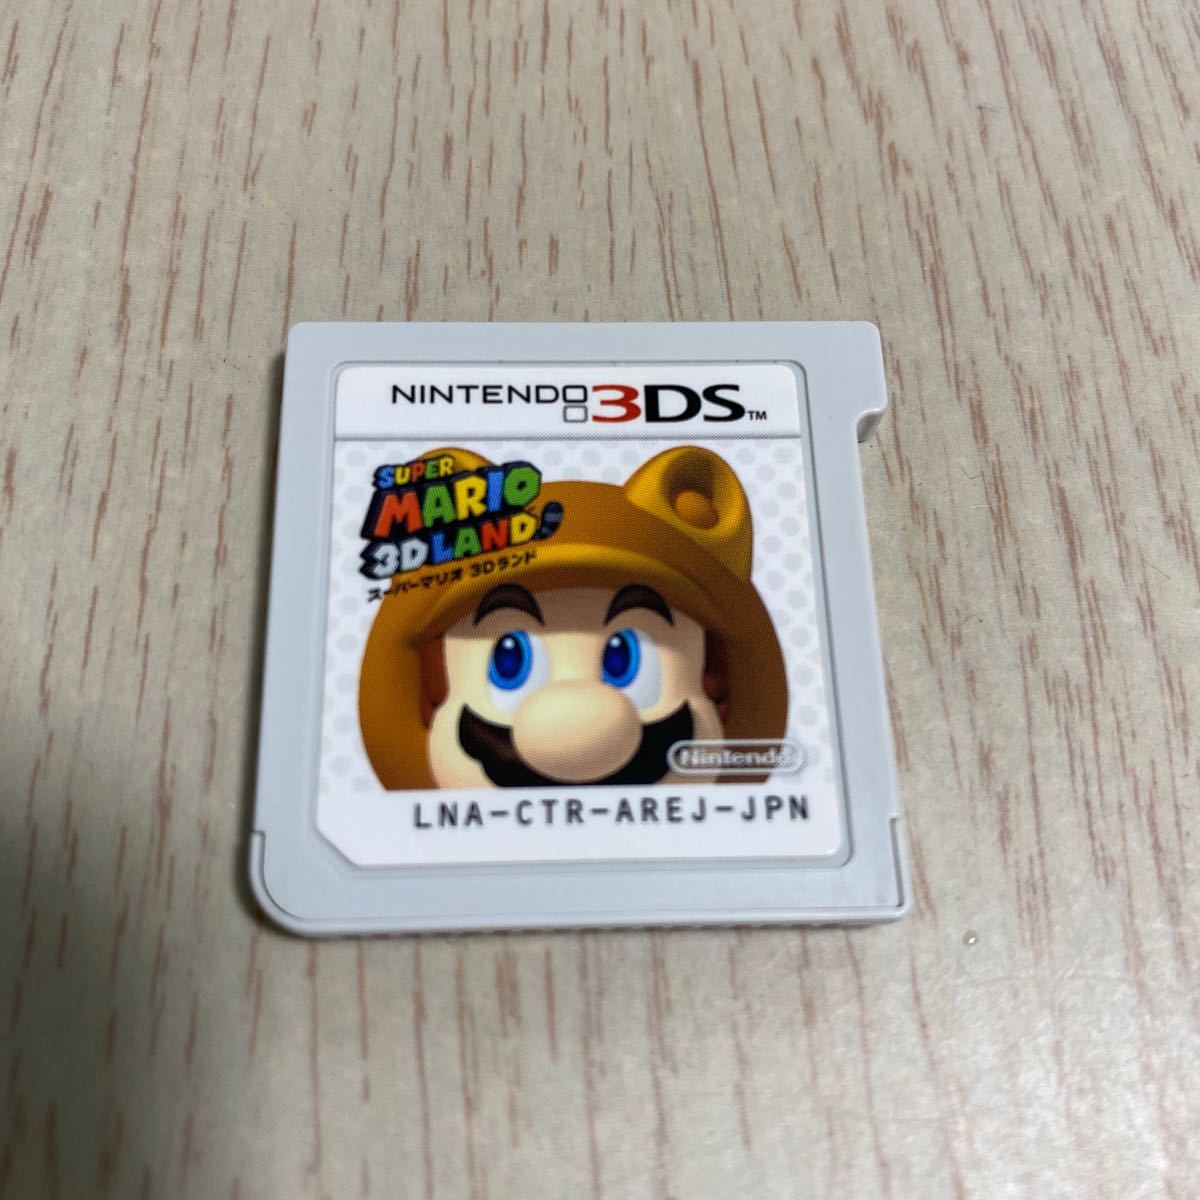 Nintendo 3DS スーパーマリオ3Dランド